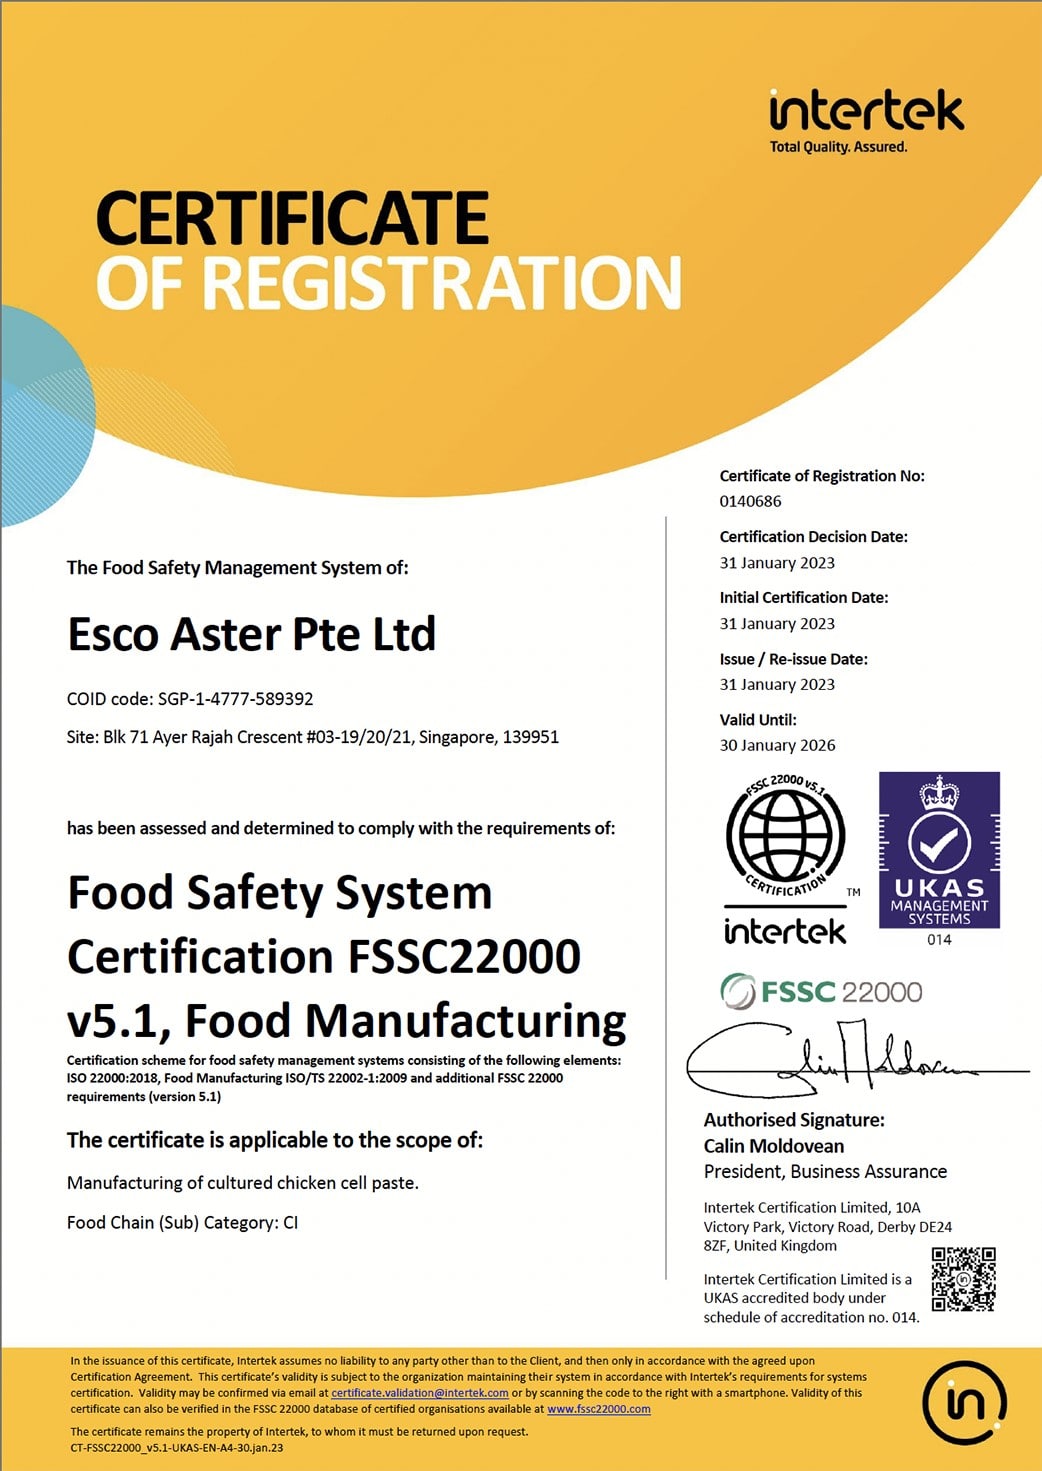 Food Safety System Certification FSSC 22000 v5.1